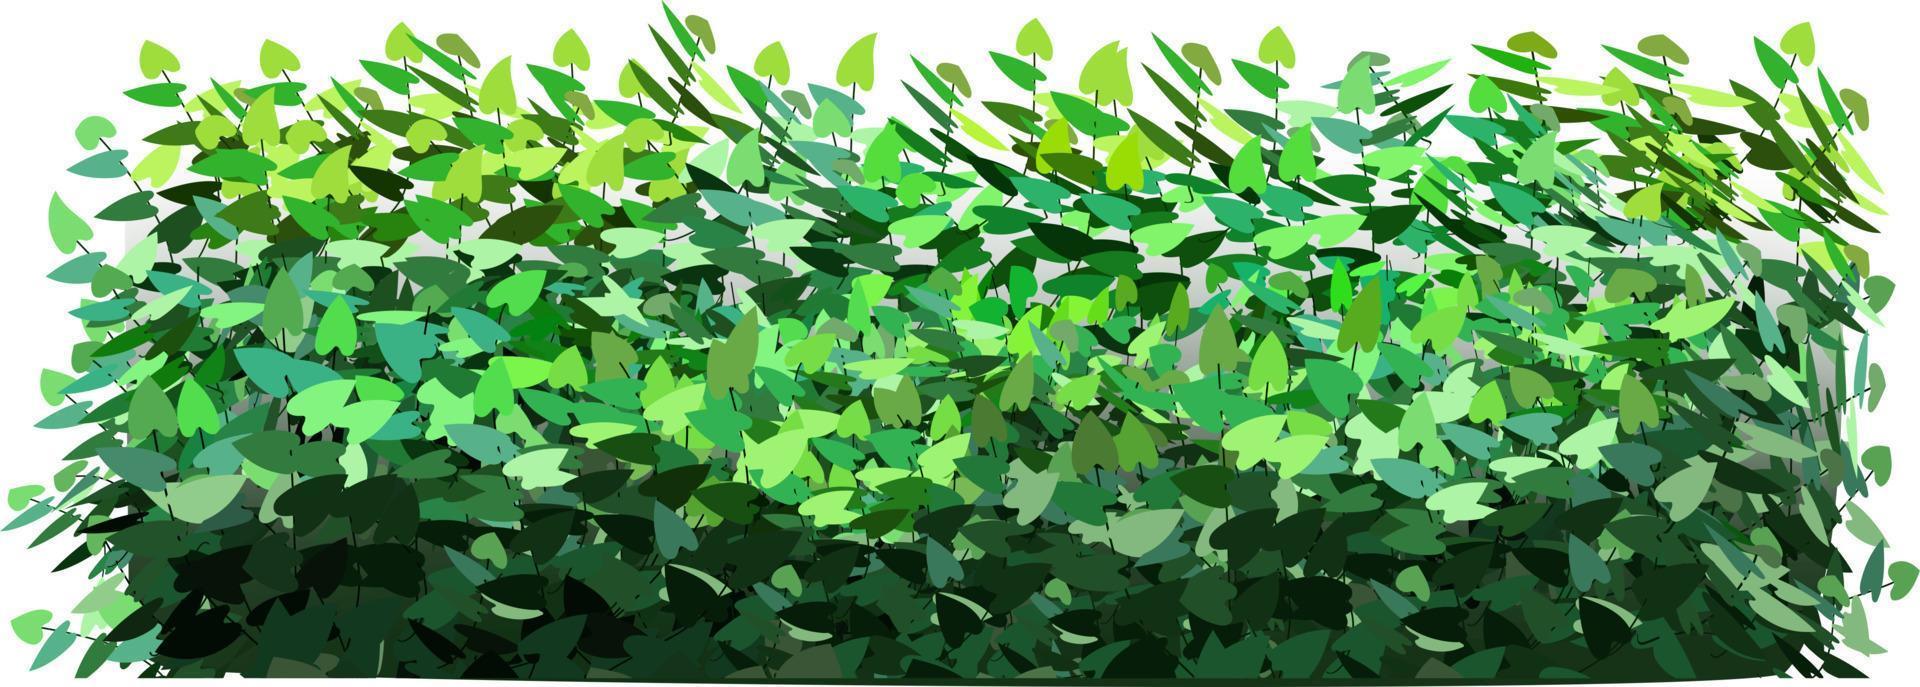 prydnadsgrön växt i form av en häck.murgrönabåge.realistisk trädgårdsbuske, säsongsbuske, buxbom, trädkrona buskbladverk. vektor